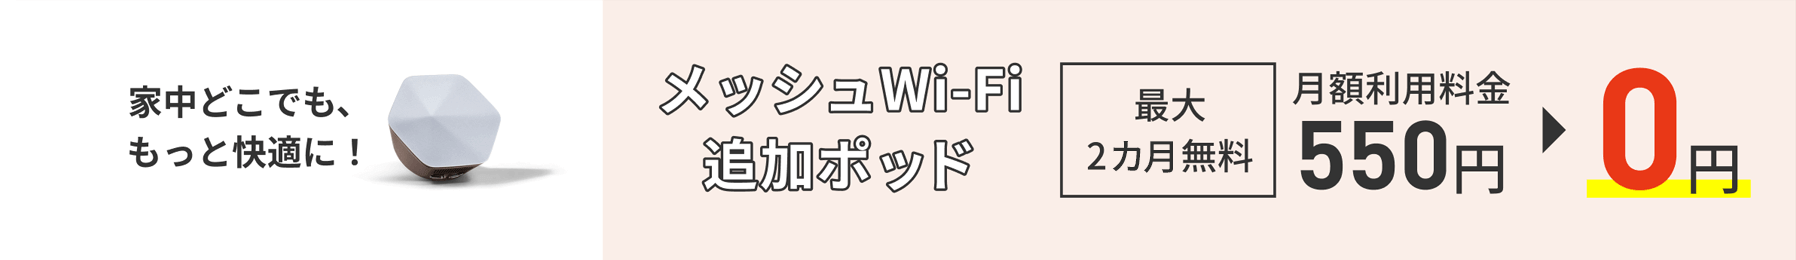 在家里的任何地方都更舒适!网状Wi-Fi追加pod最多2个月免费包月费用550日元→0日元